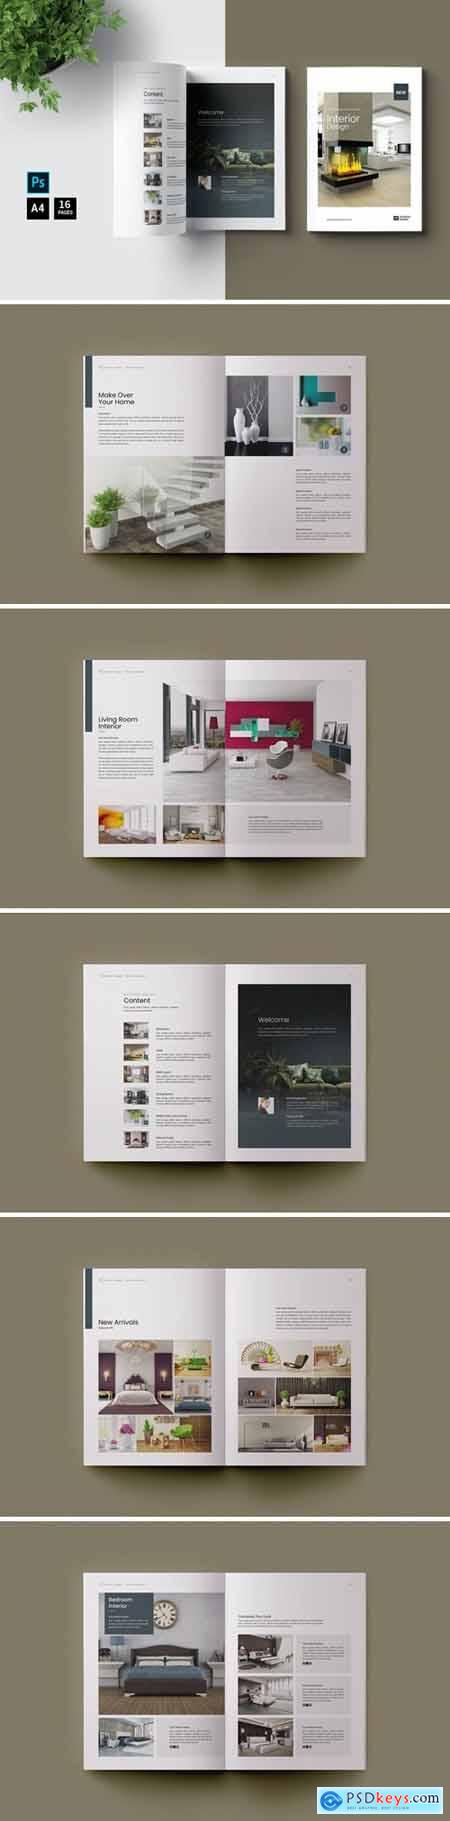 PSD - Interior Design Brochure Catalog ZLKYVTT